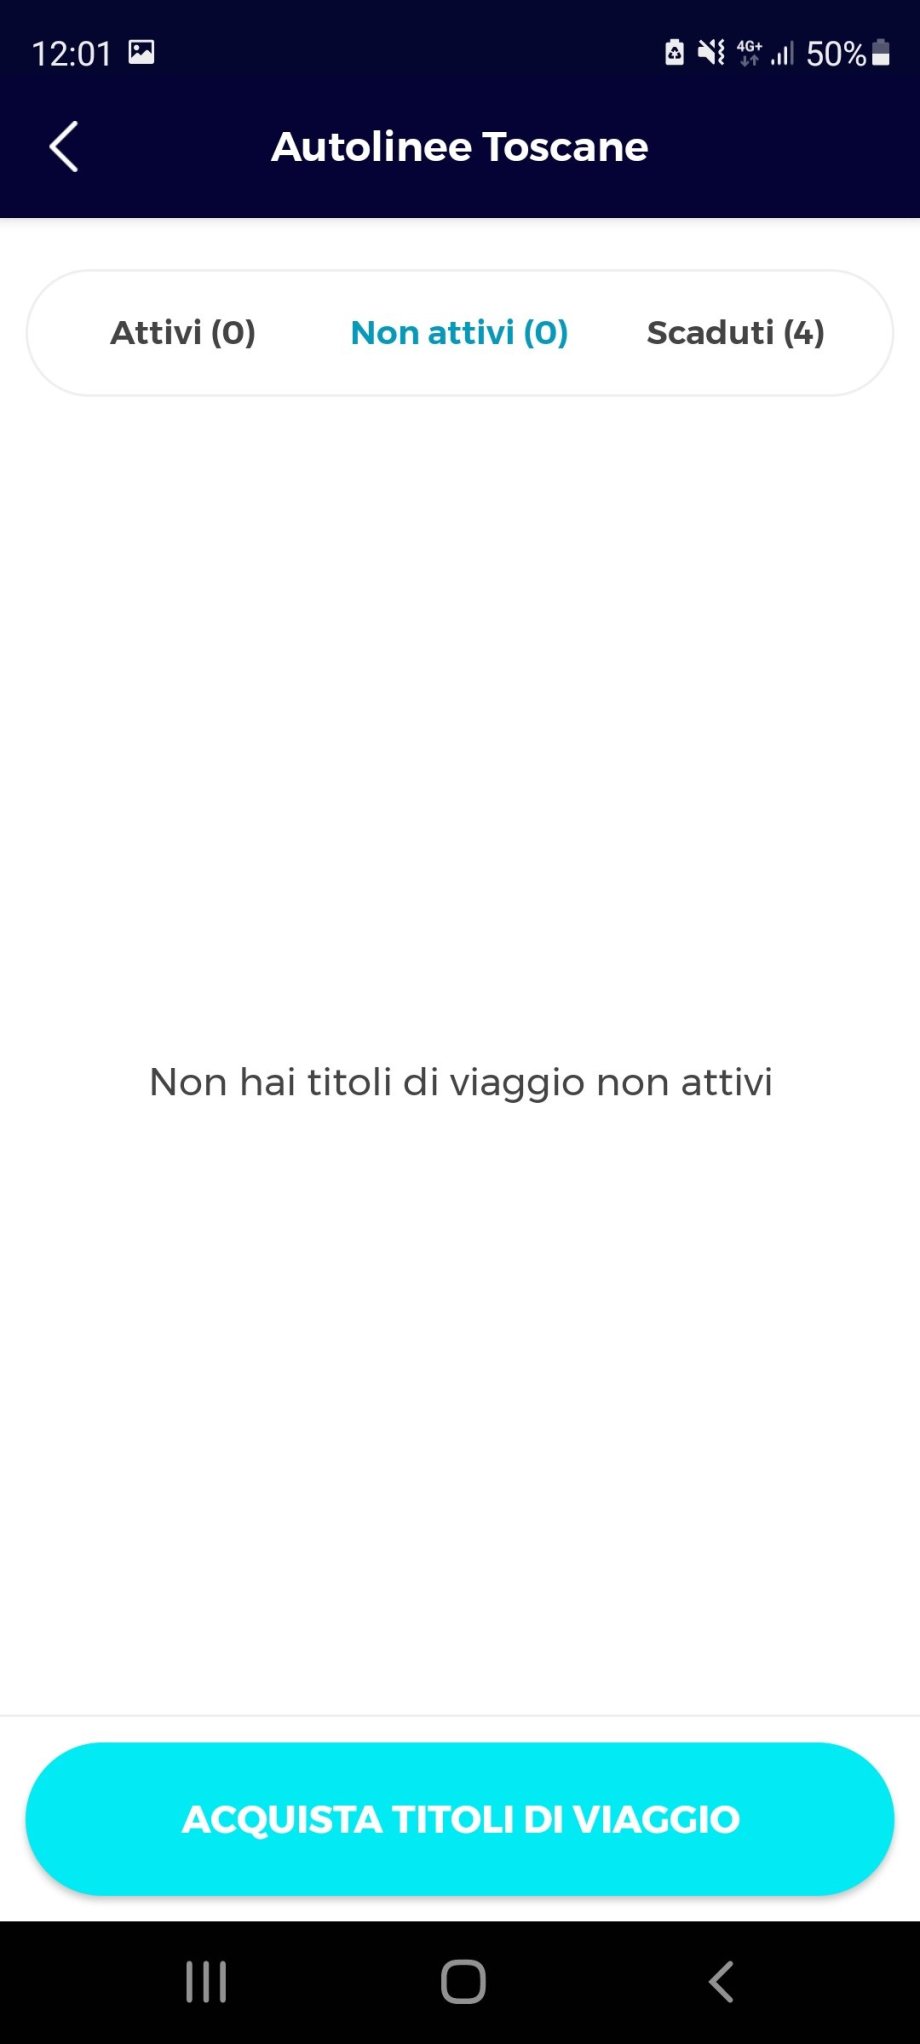 Žádné aktivní jízdenky, pro nákup klikněte na tlačítko Acquista Titoli di Viaggio